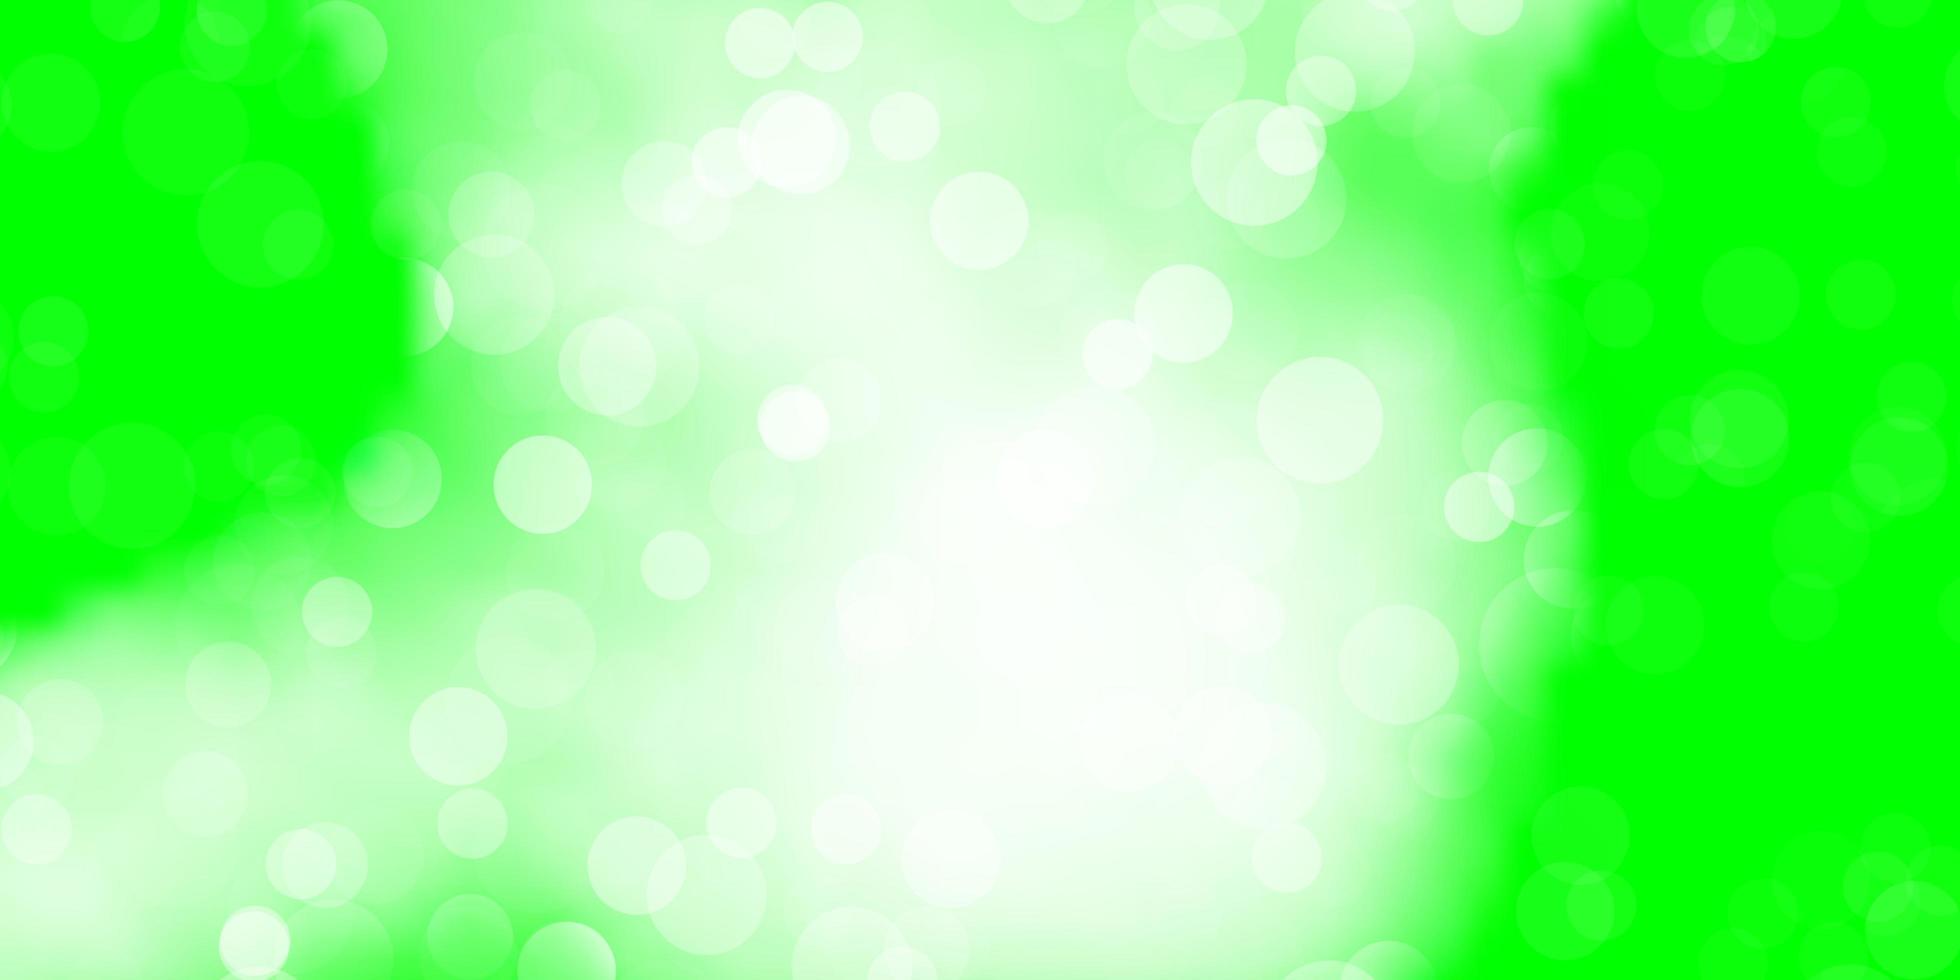 ljusgrön bakgrund med cirklar. vektor